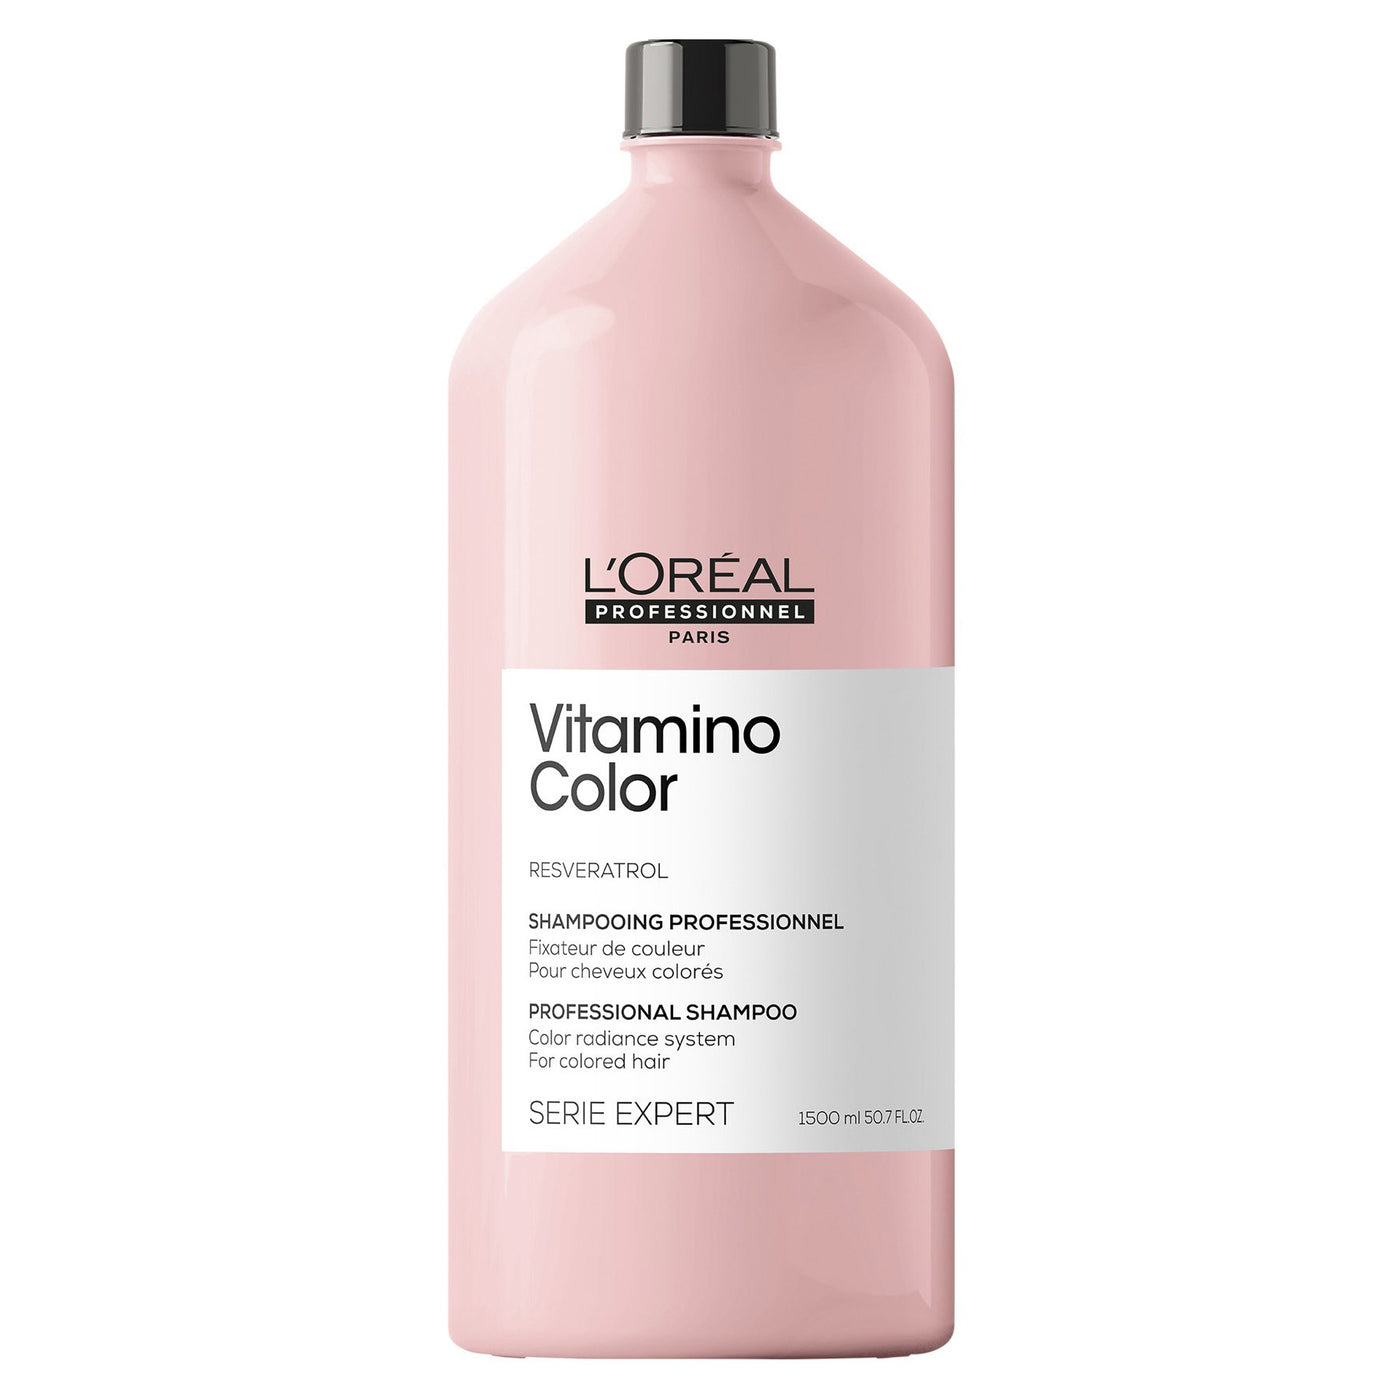 L'Oreal Professionnel Vitamino Color Shampoo 1.5 Litre